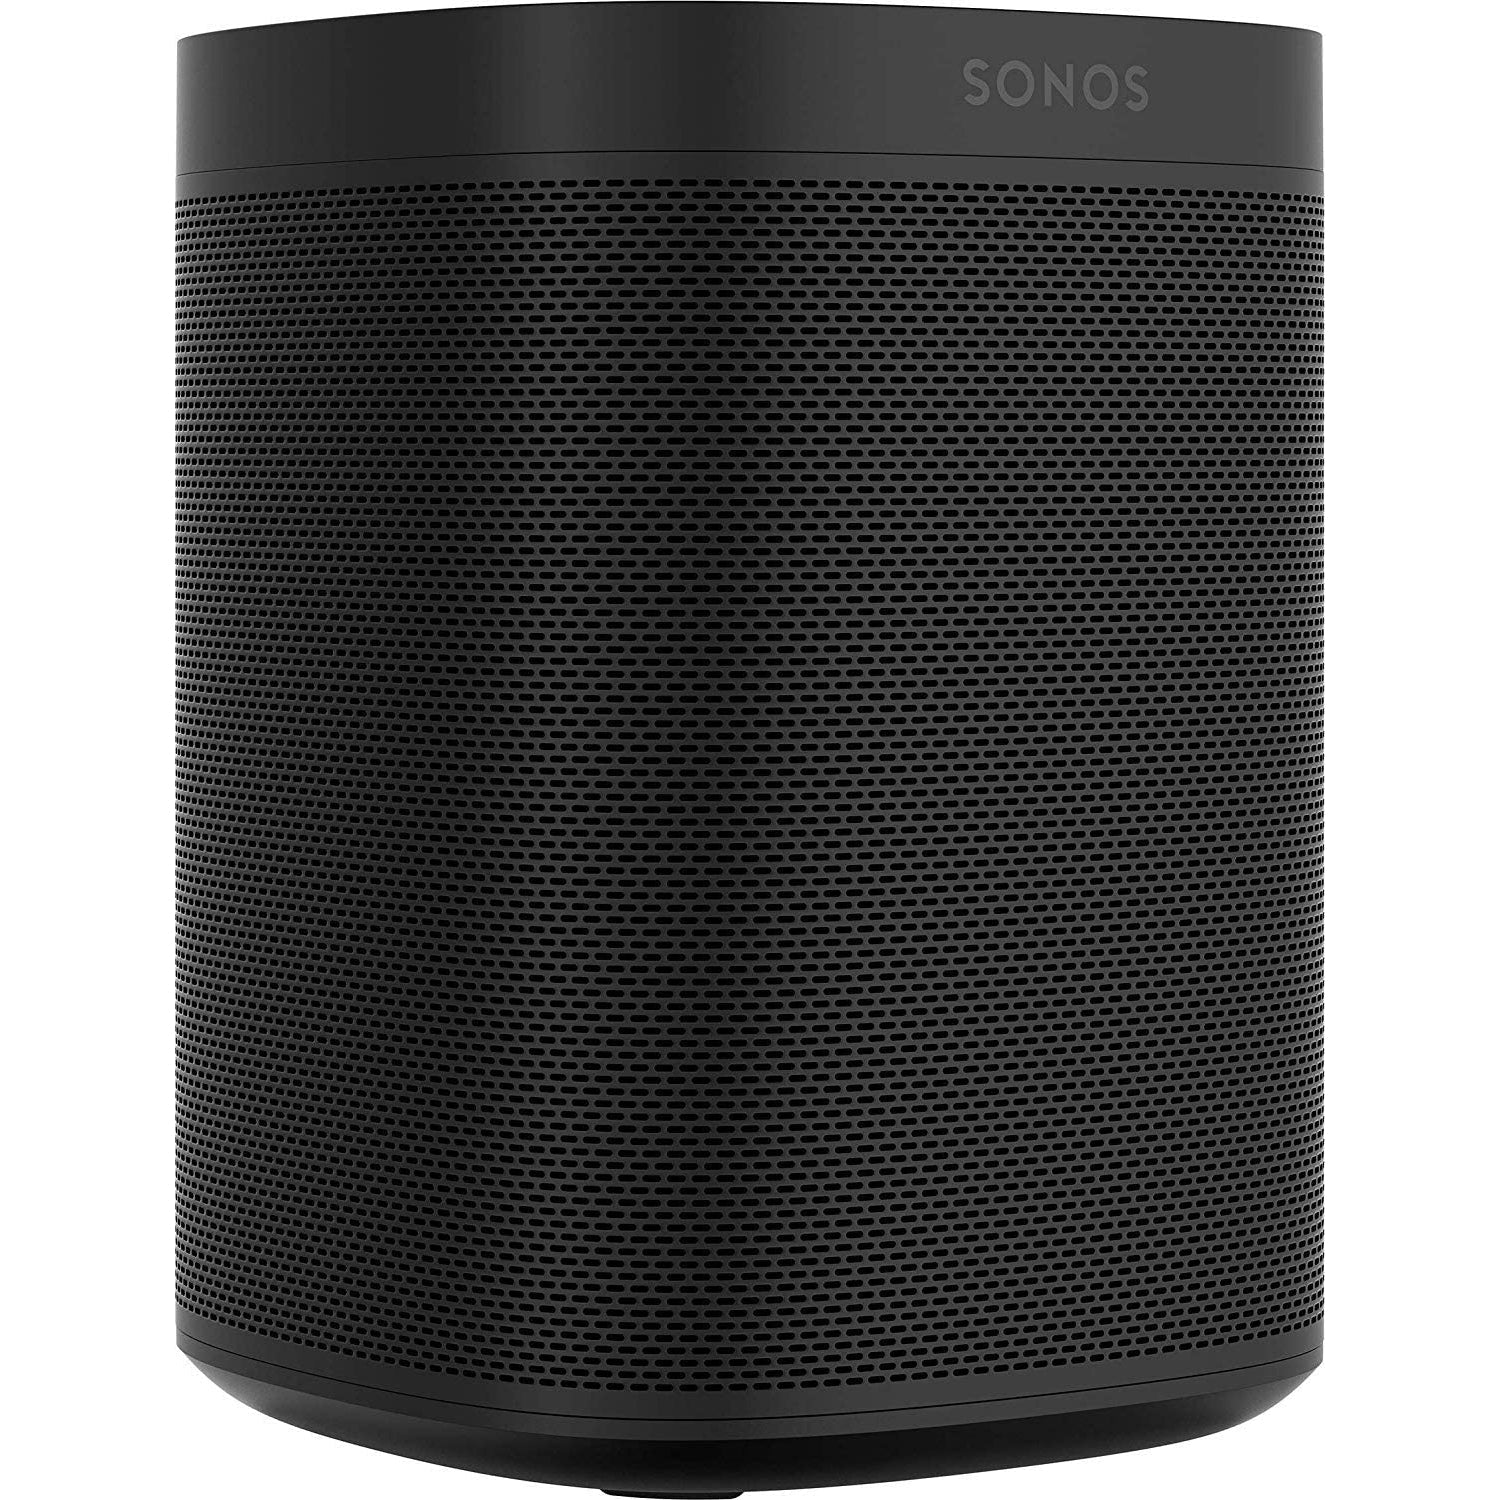 Sonos One Gen 2 Smart Speaker with Amazon Alexa Built-in - Black